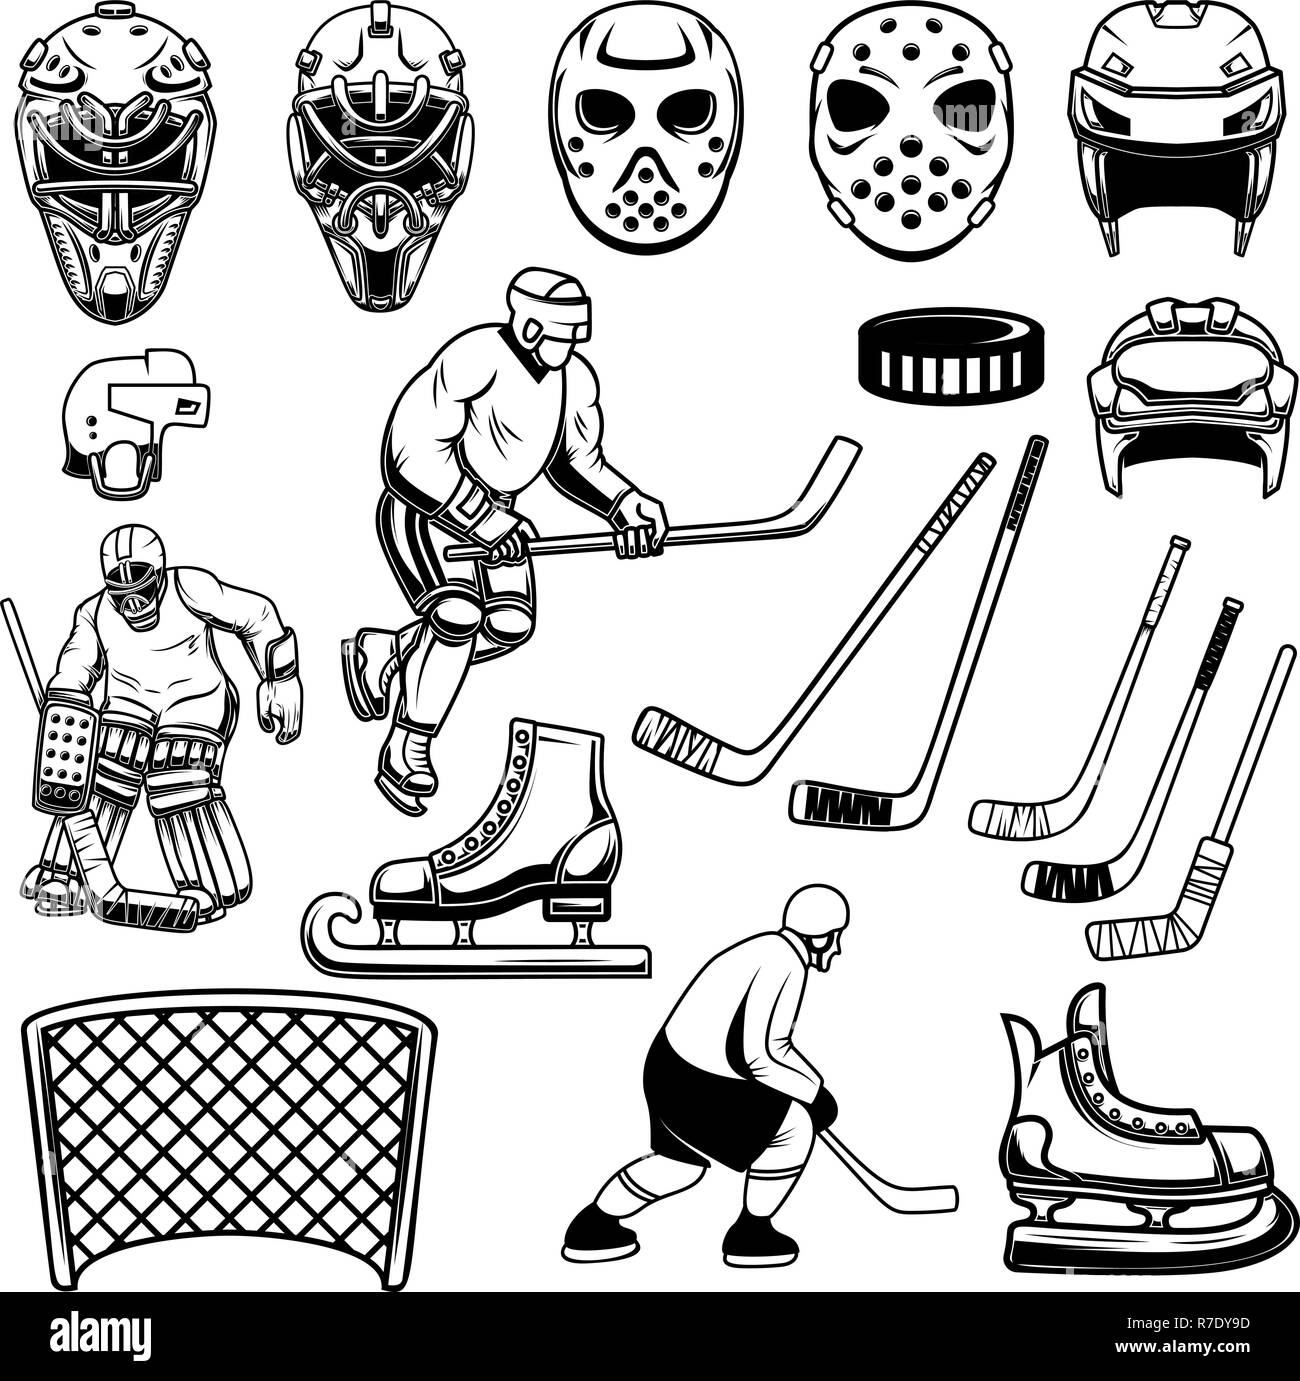 Satz von Hockey Design Elemente. Spieler, Torwart, Eishockeyschläger, Schlittschuhe. Für logo, Label, Emblem, sign. Vector Illustration Stock Vektor